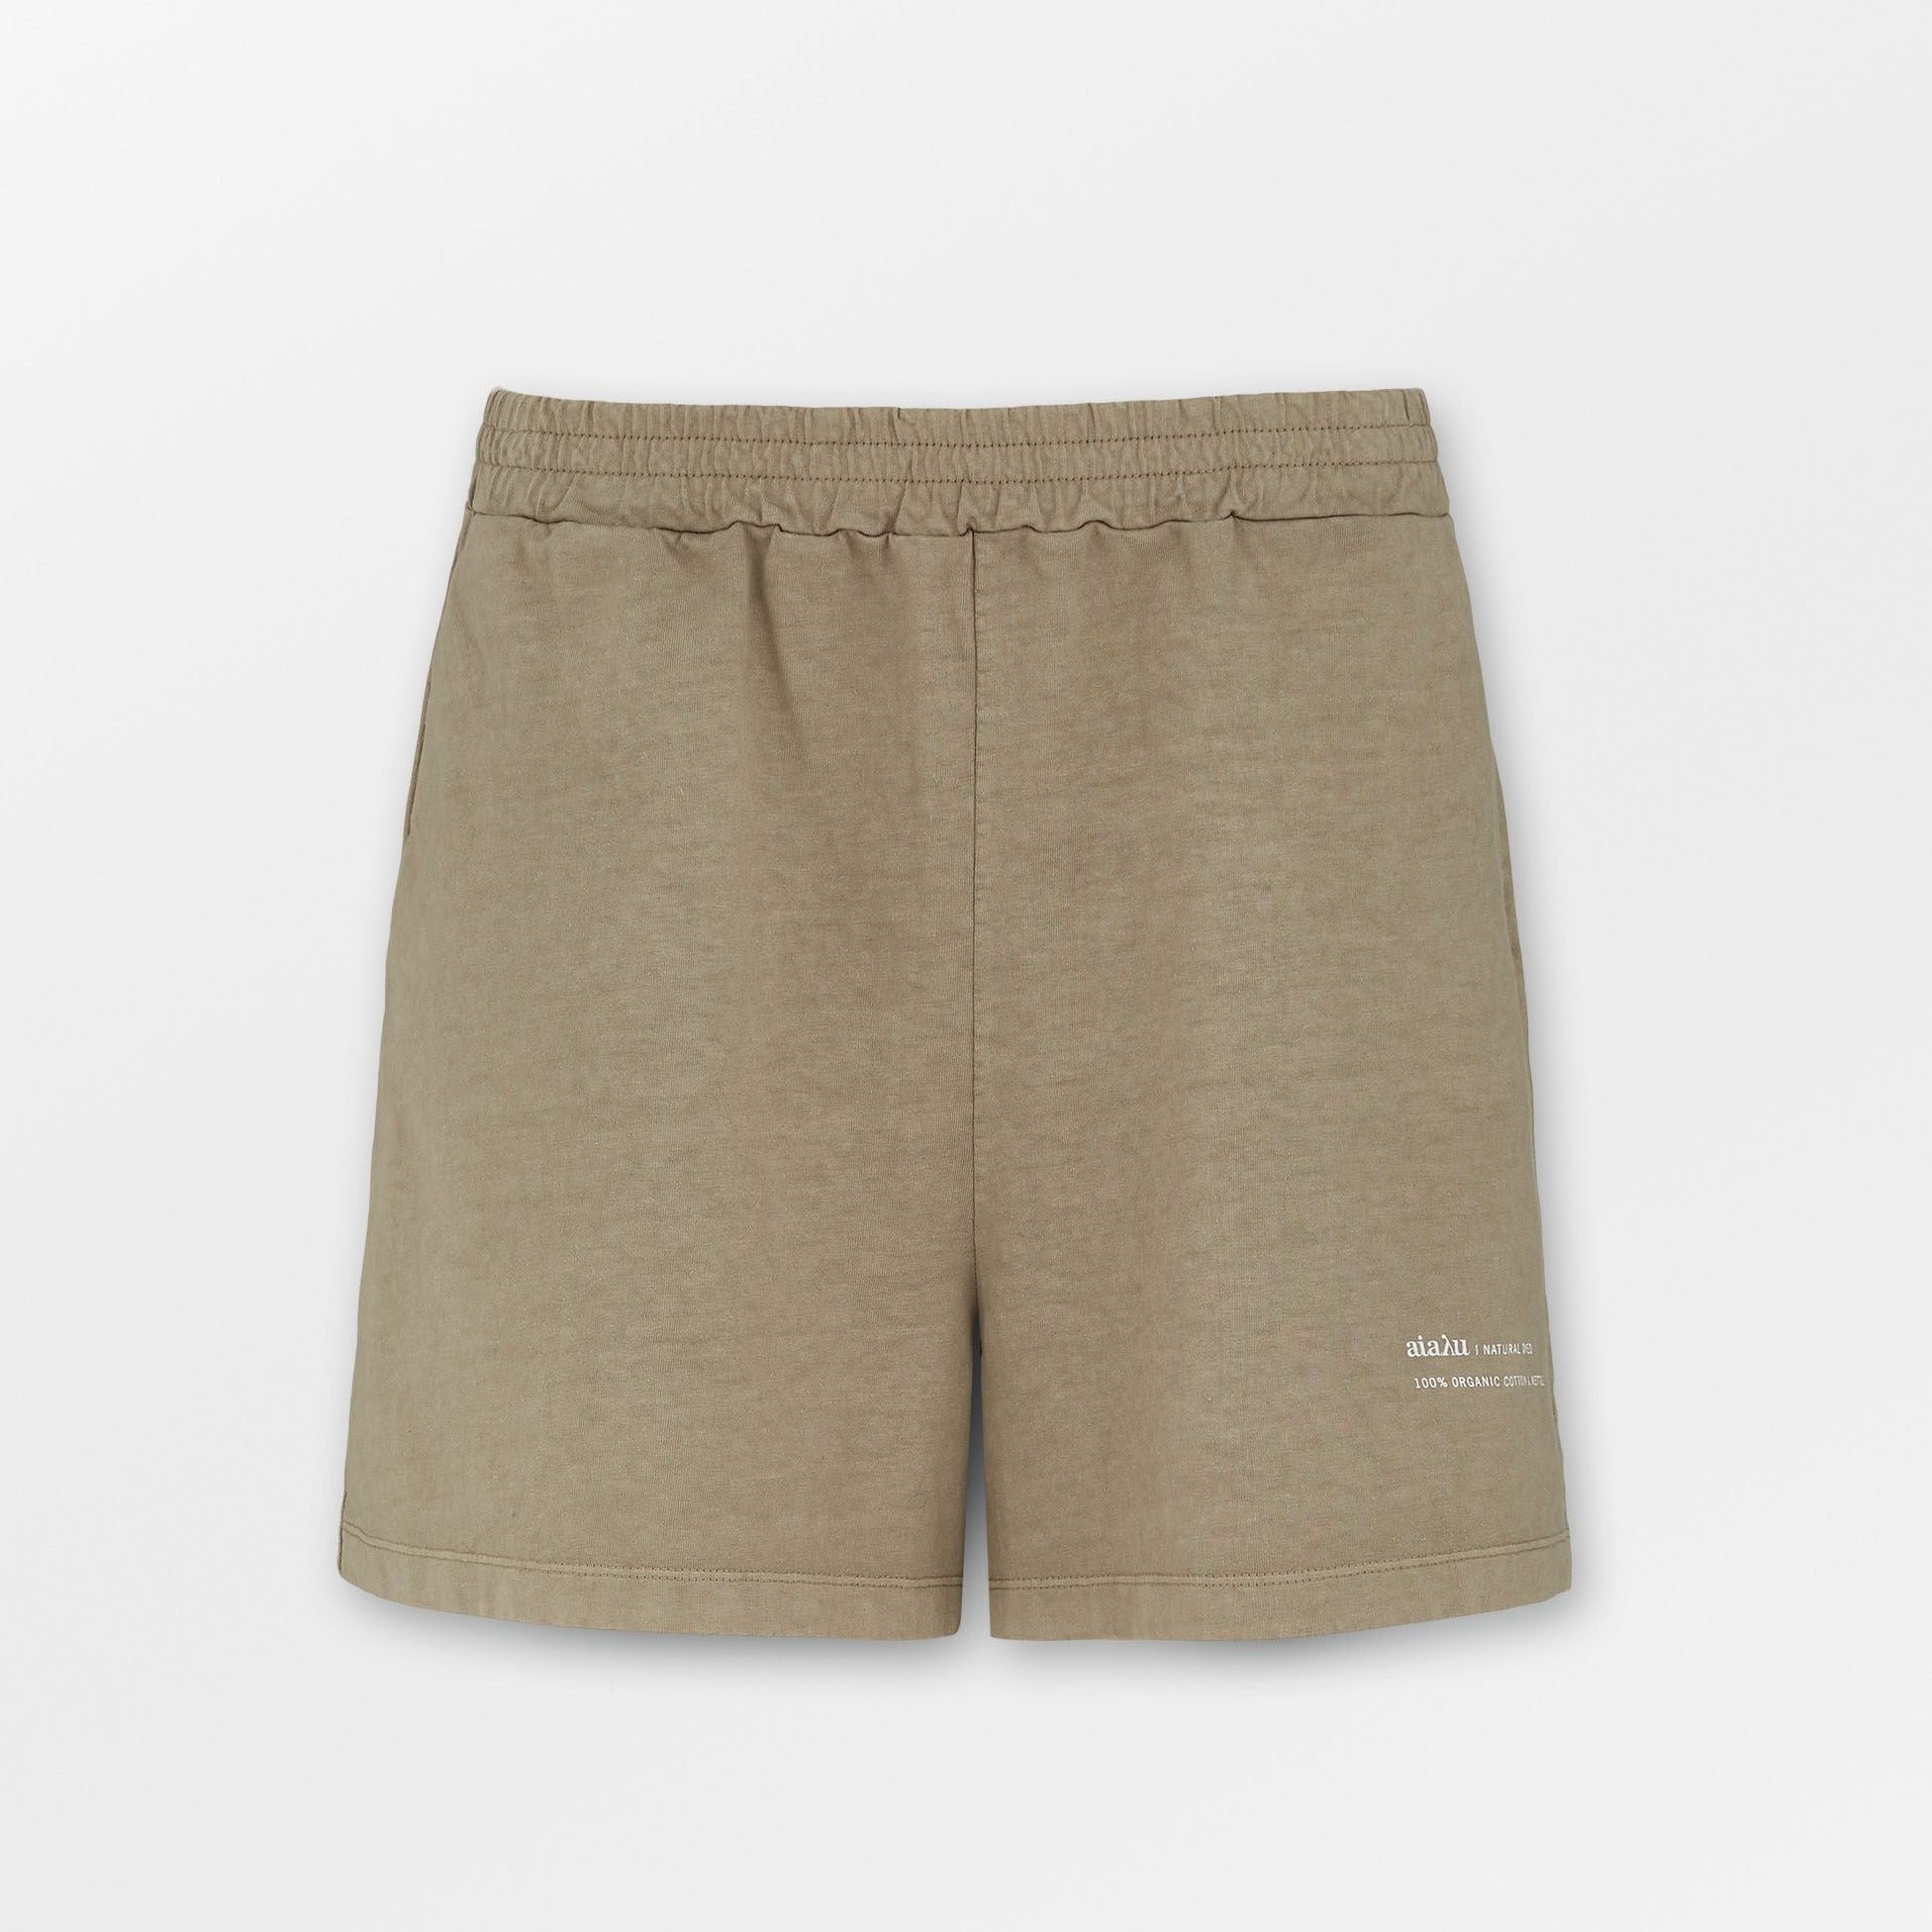 Beo Shorts / Natural Earth